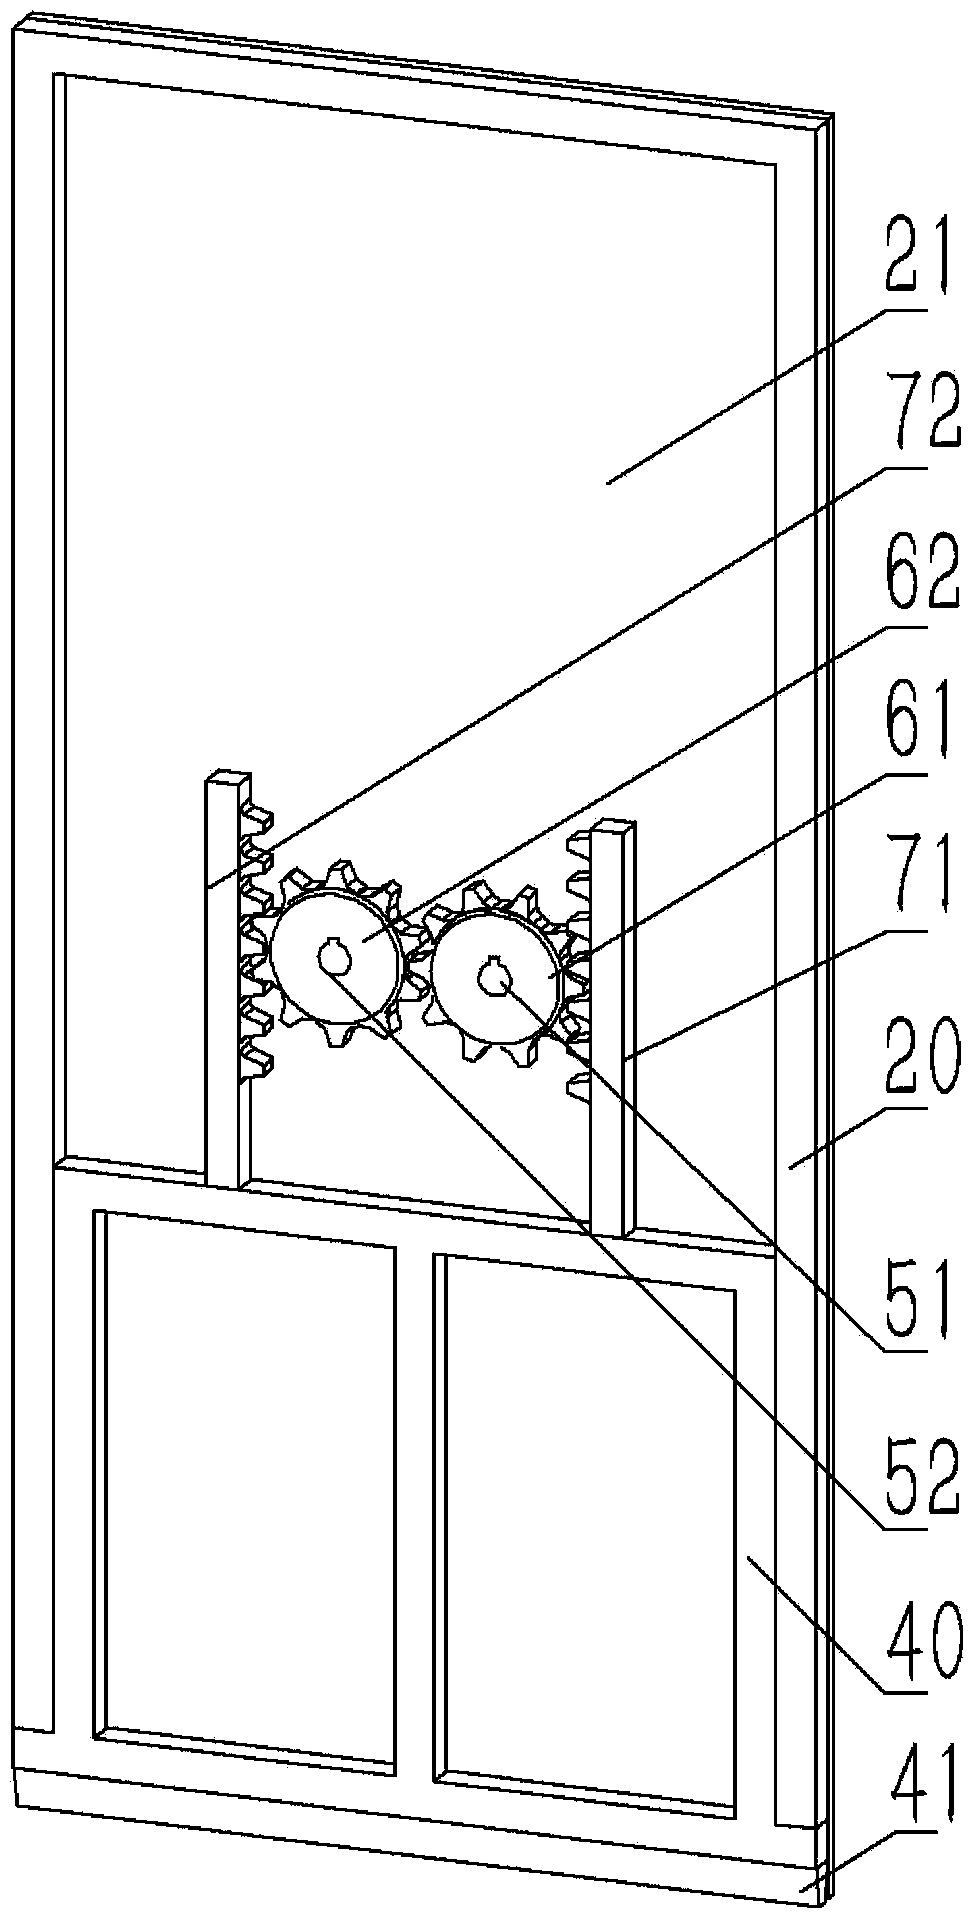 Sealing structure of wooden door